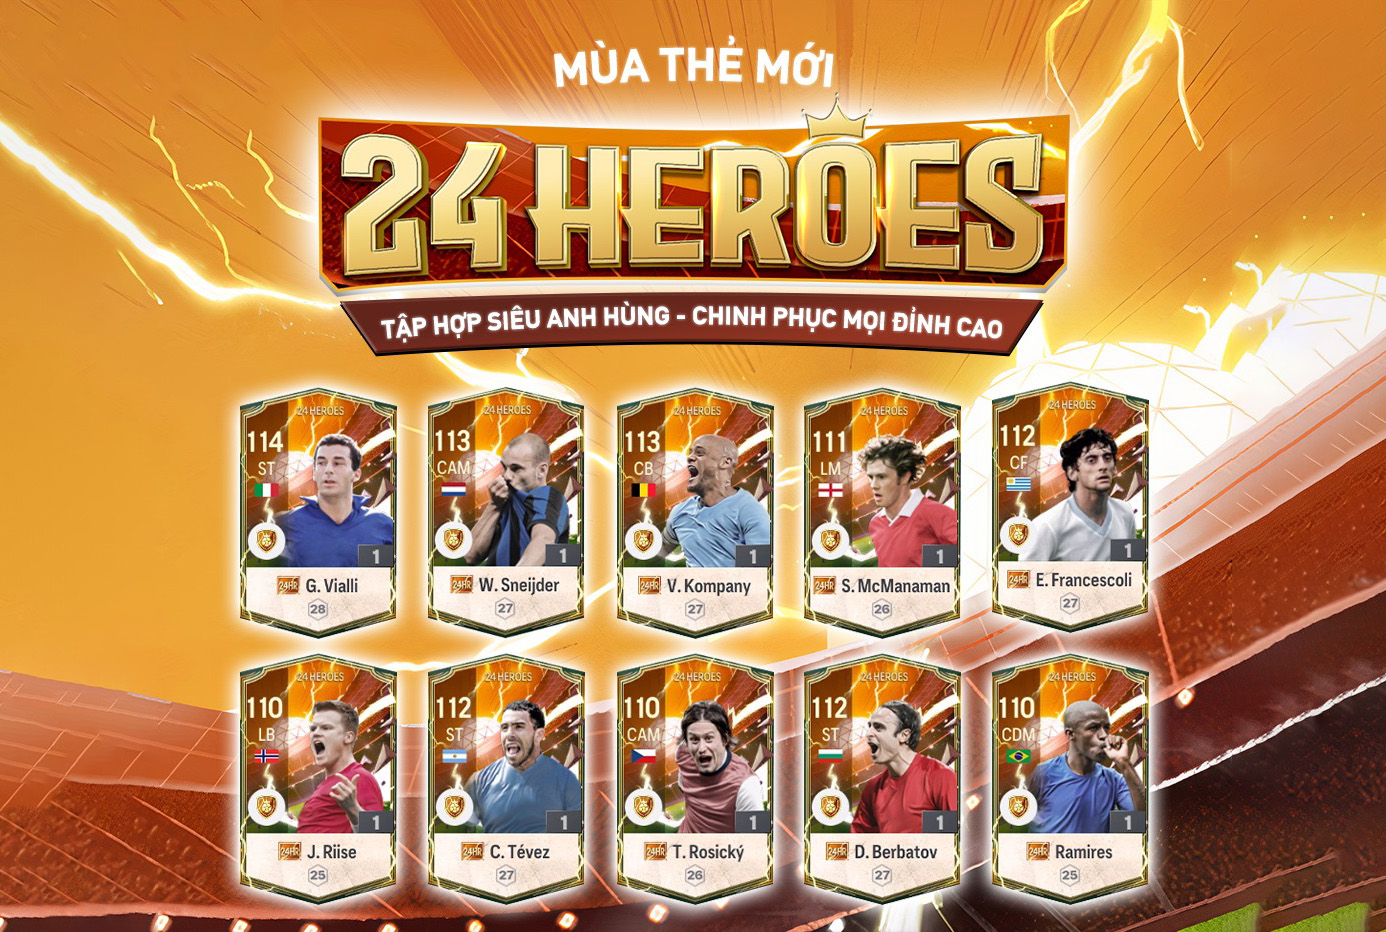 Top 5 cầu thủ mùa 24 Heroes được đánh giá cao trong FC Online